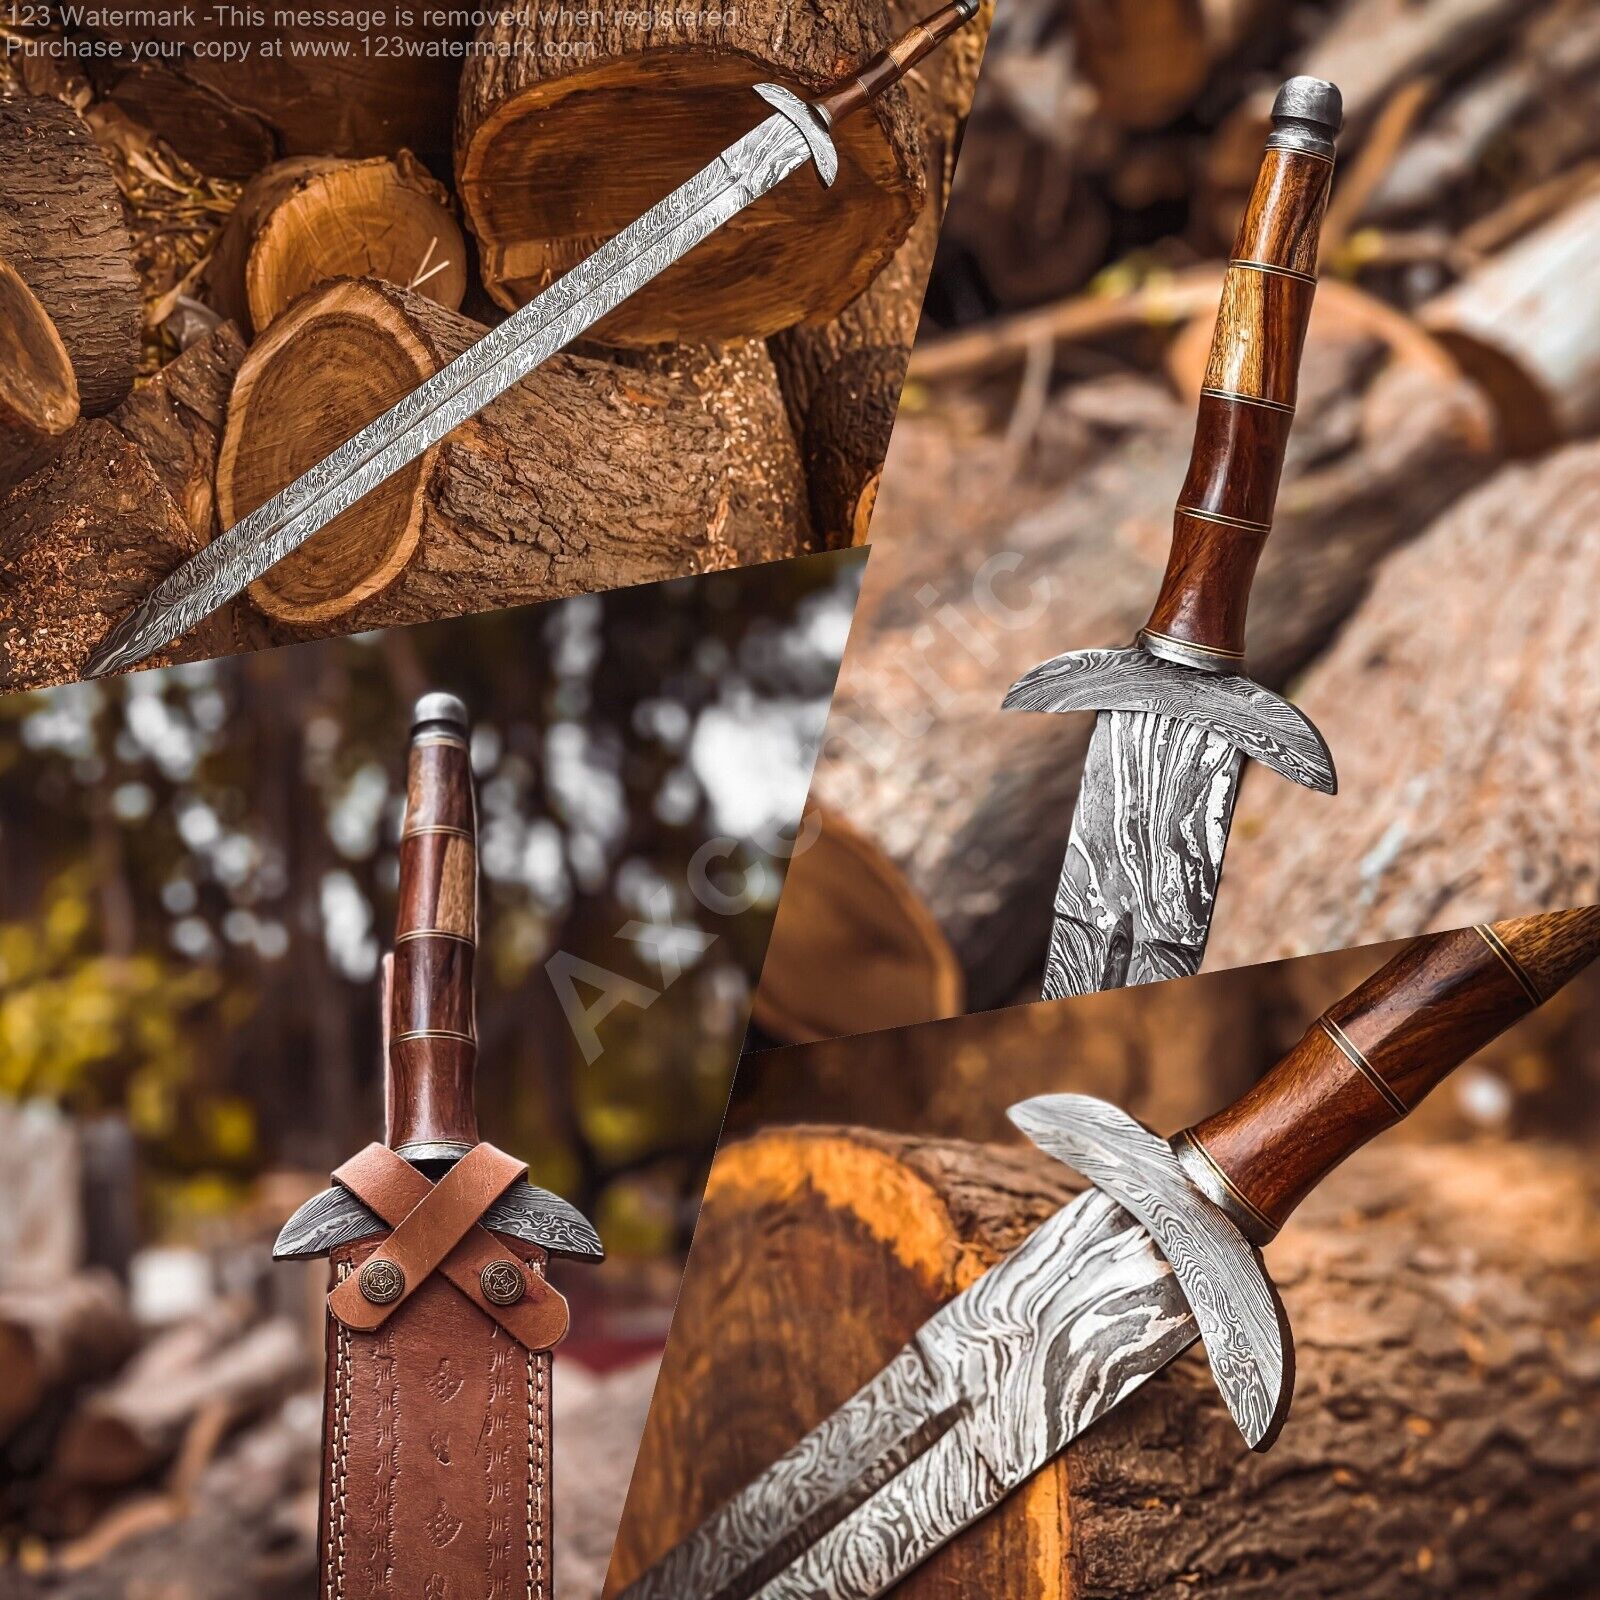 Custom Made Sword Damascus Steel Viking Best Quality Battle Ready Sword Gift for